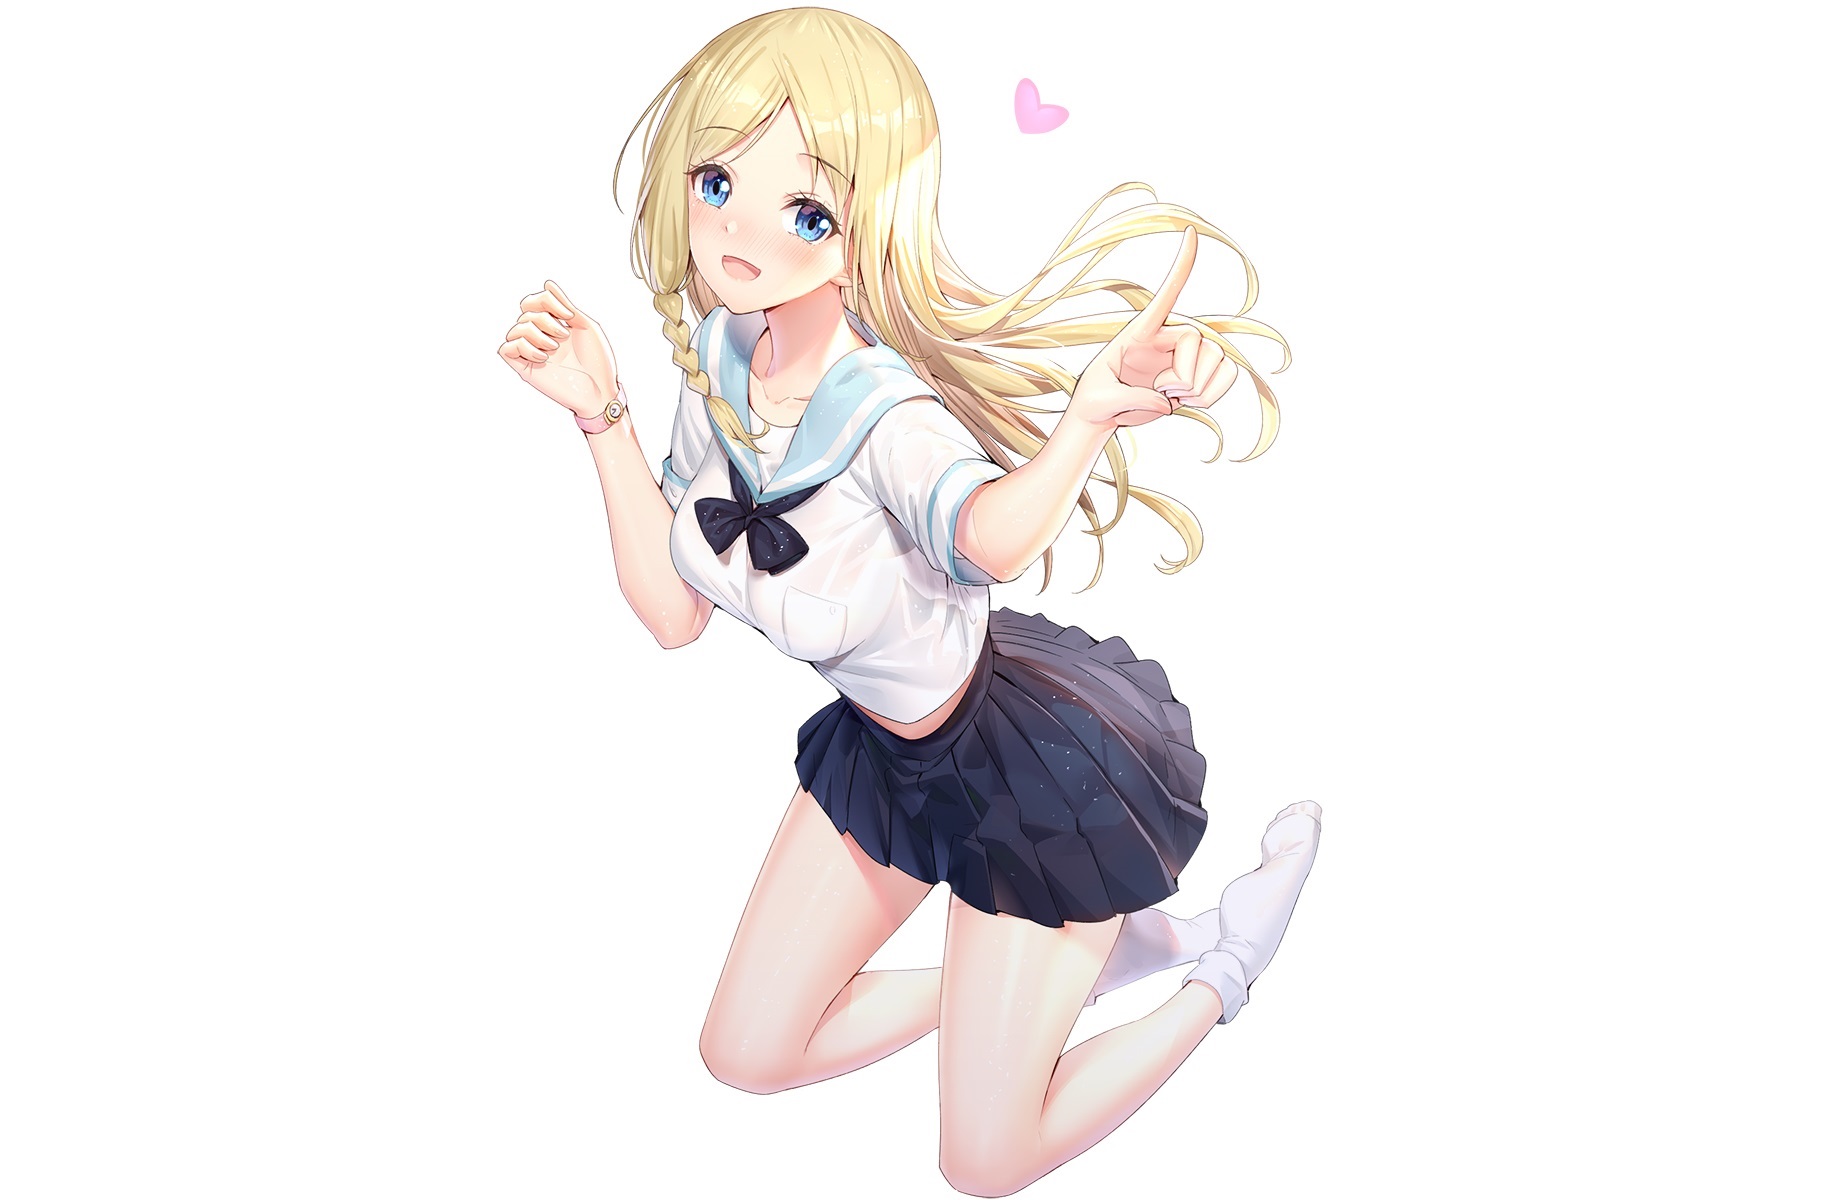 Anime 1848x1200 Hayasaka Ai blonde blue eyes school uniform skirt stockings blushing long hair braids kneeling Kaguya-Sama: Love is War anime girls Ririko